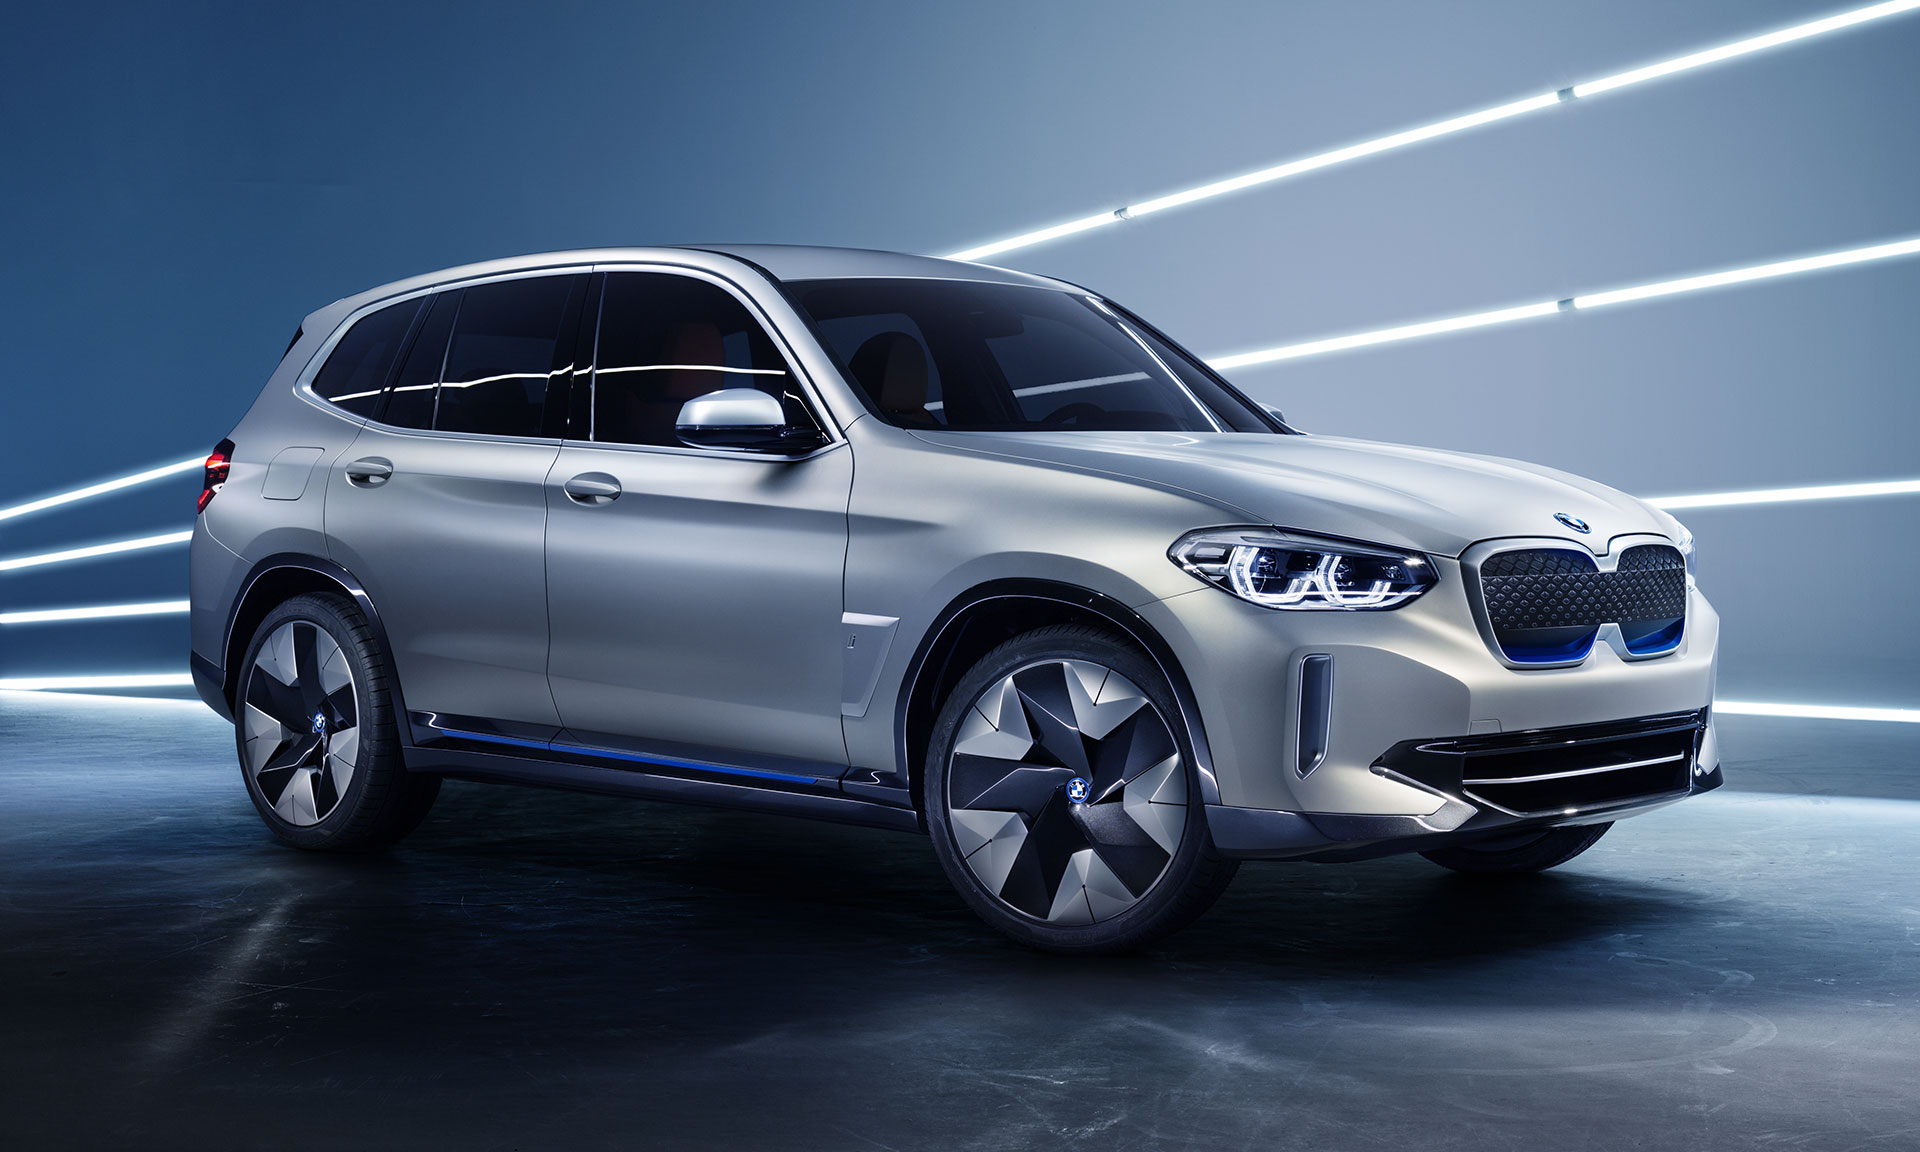 BMW začne vyrábět plně elektricky poháněné iX3 v roce 2020